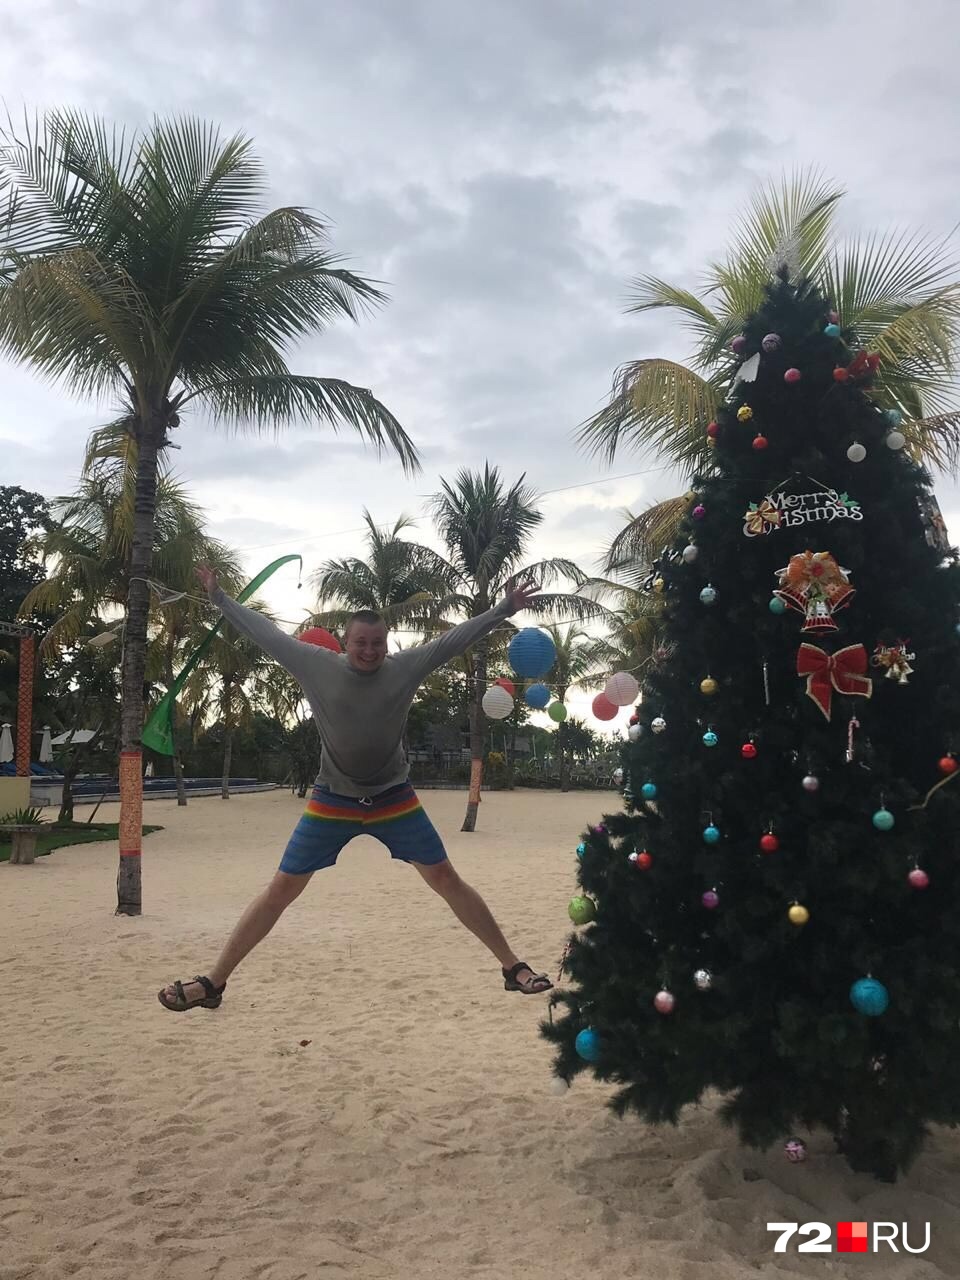 Согласитесь, непривычно наблюдать хвойное деревце в шарах и бантах на фоне пляжа и пальм